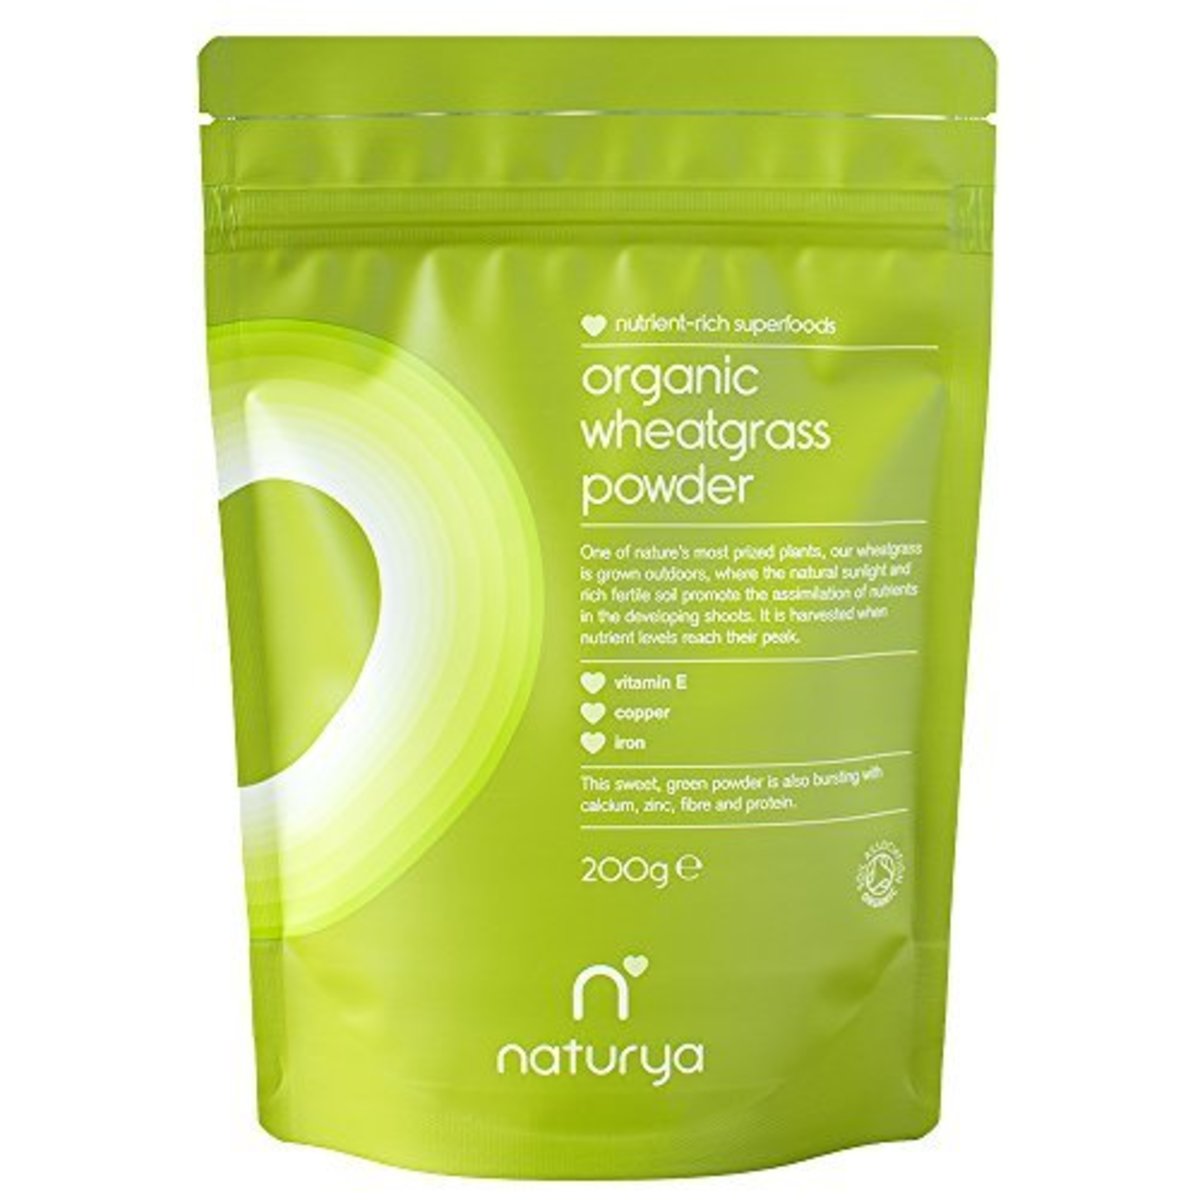 35 amazing wheatgrass benefits, organic wheatgrass powder by naturya